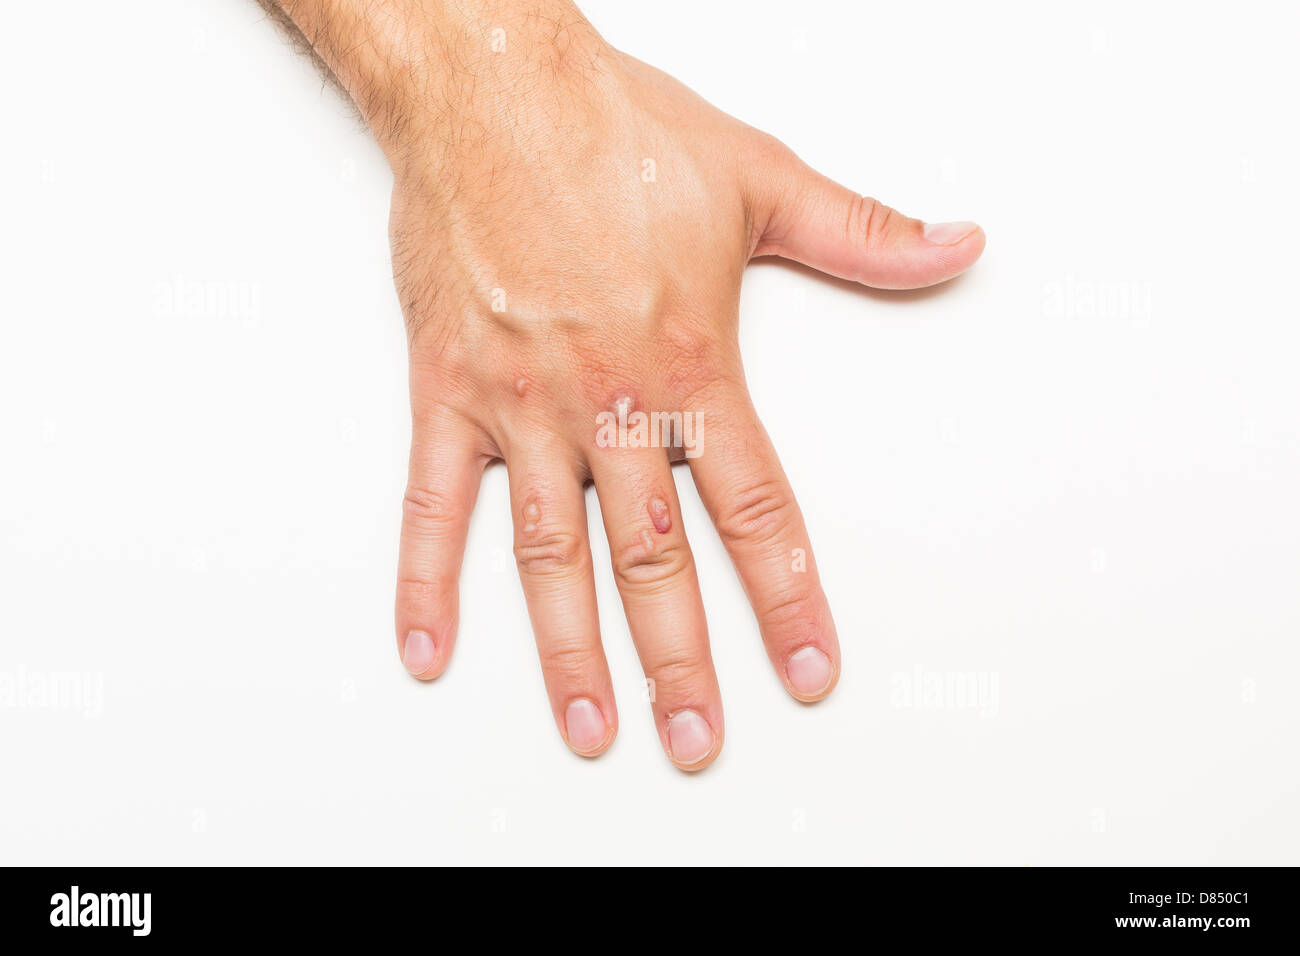 Hand des Mannes bedeckt mit Bläschen verursacht durch Kryochirurgie - Verfahren zum Entfernen Warze mit flüssigem Stickstoff Stockfoto